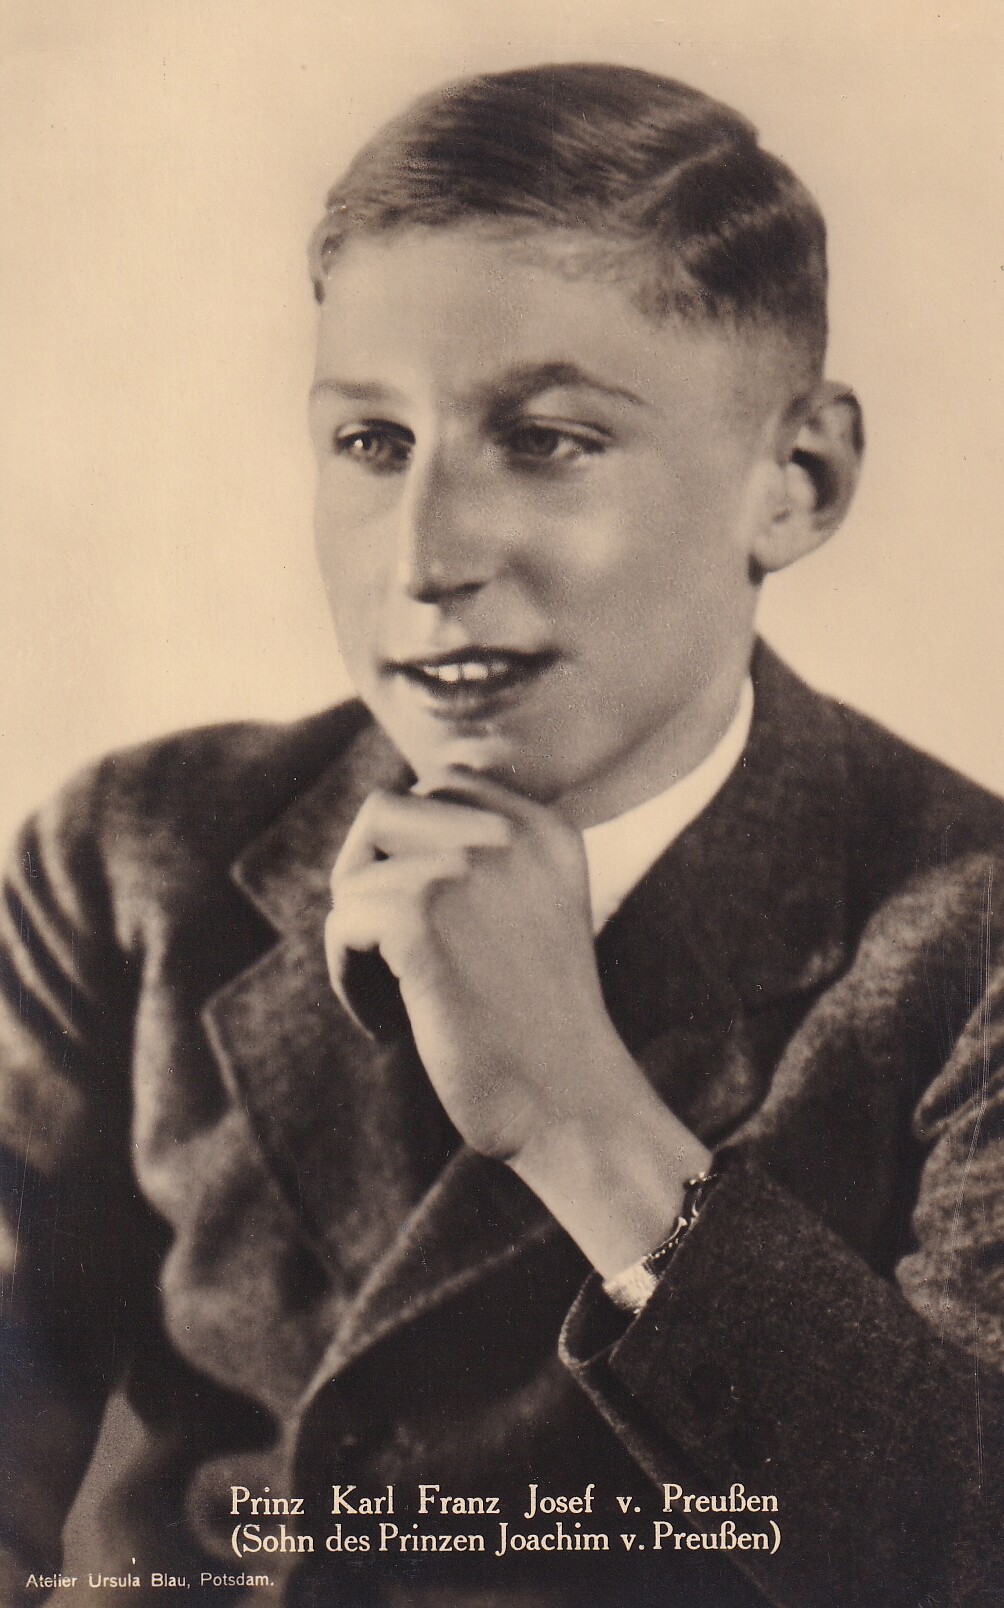 Bildpostkarte mit Foto des Karl Franz Josef Prinz von Preußen, 1931 (Schloß Wernigerode GmbH RR-F)